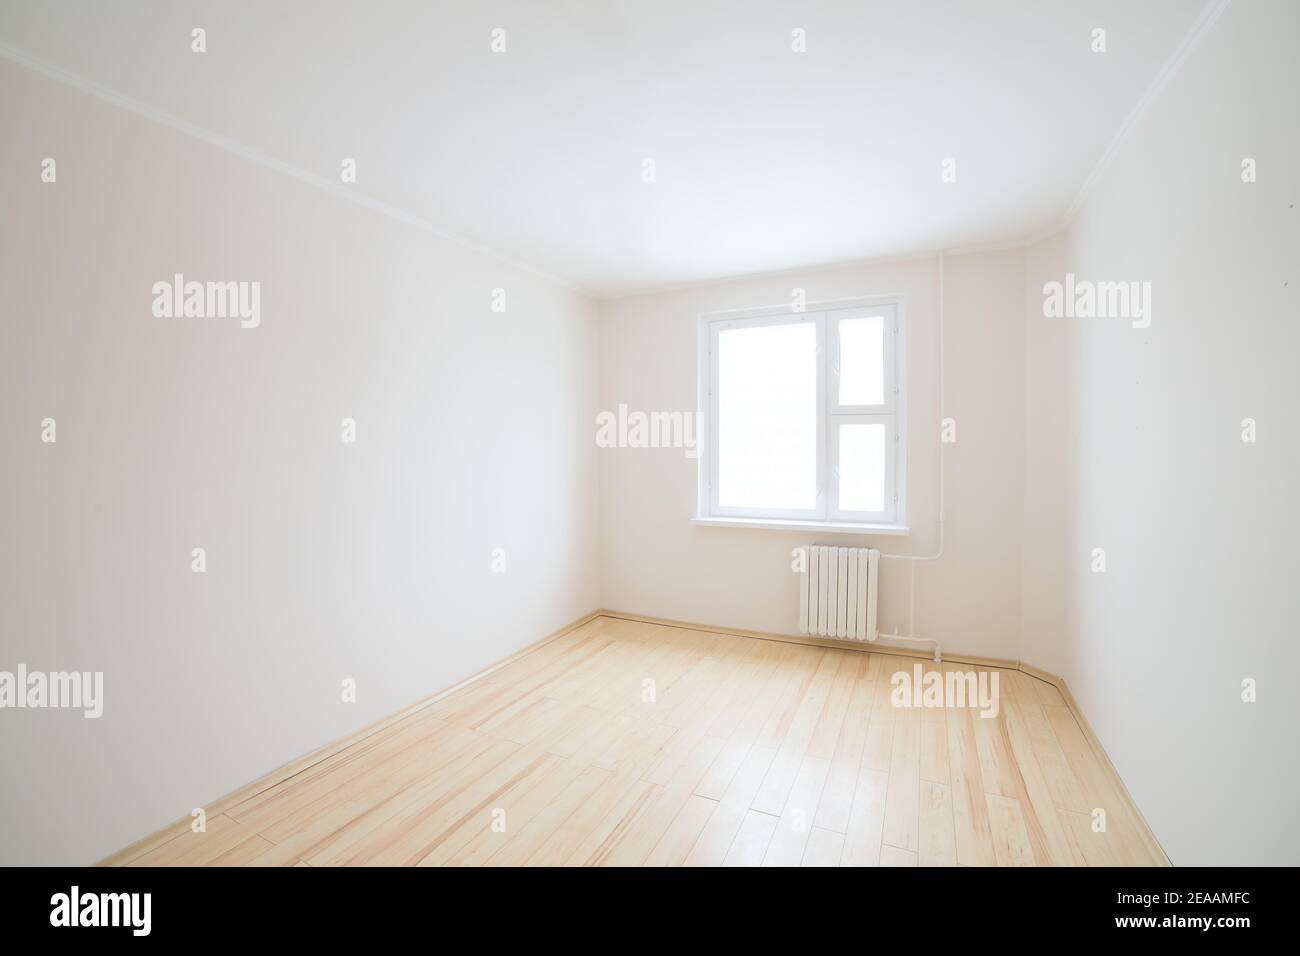 Empty white room with window. Stock Photo